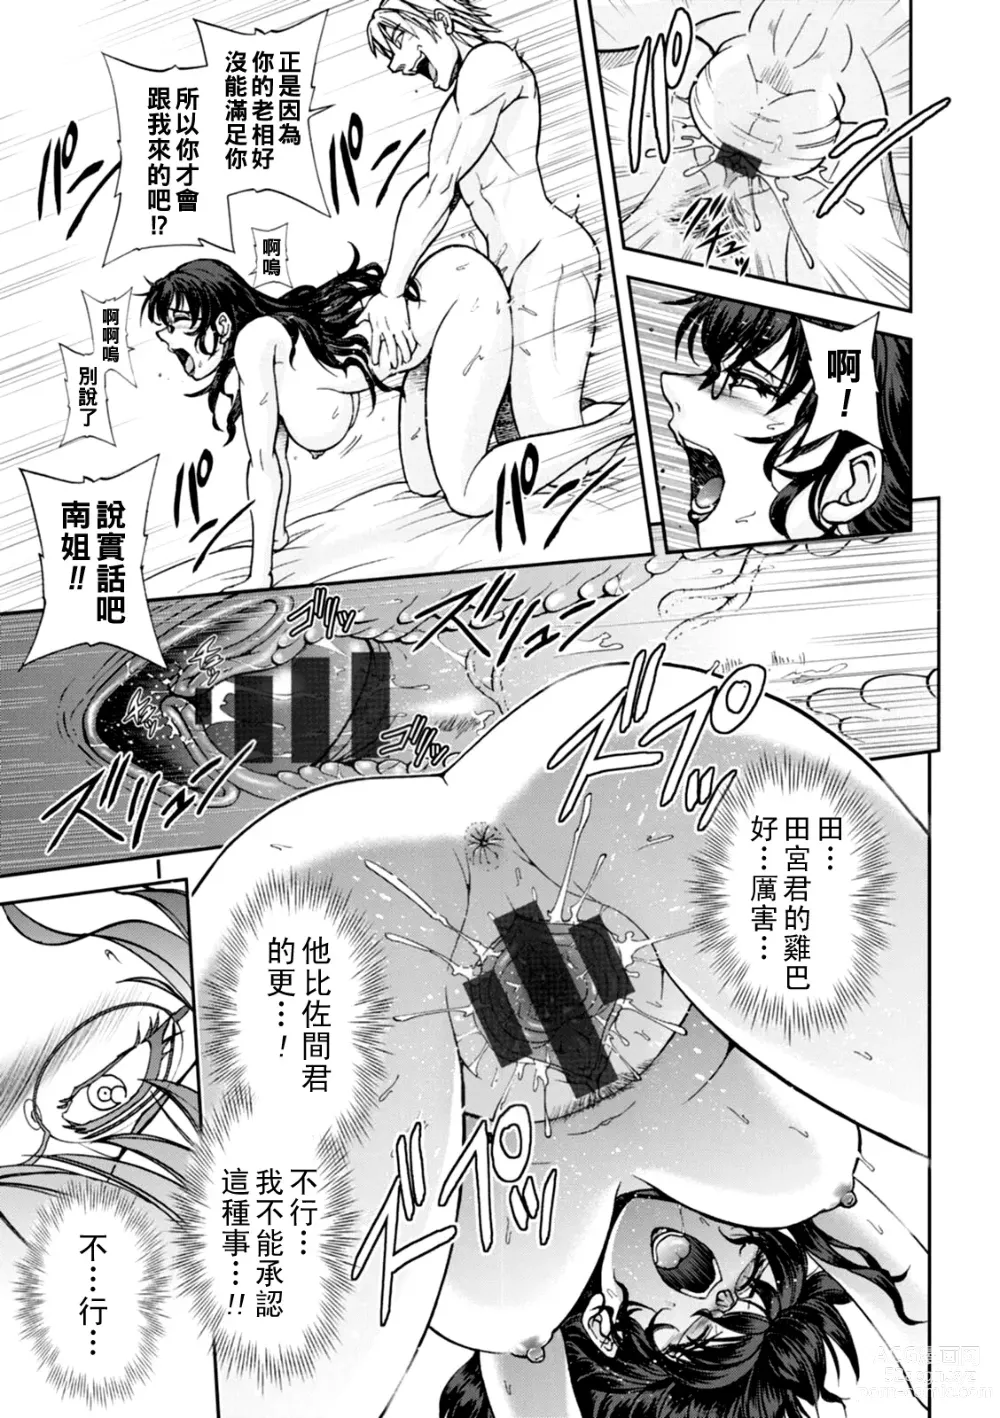 Page 70 of manga Maruhadaka no Minami-san Ch. 1-4